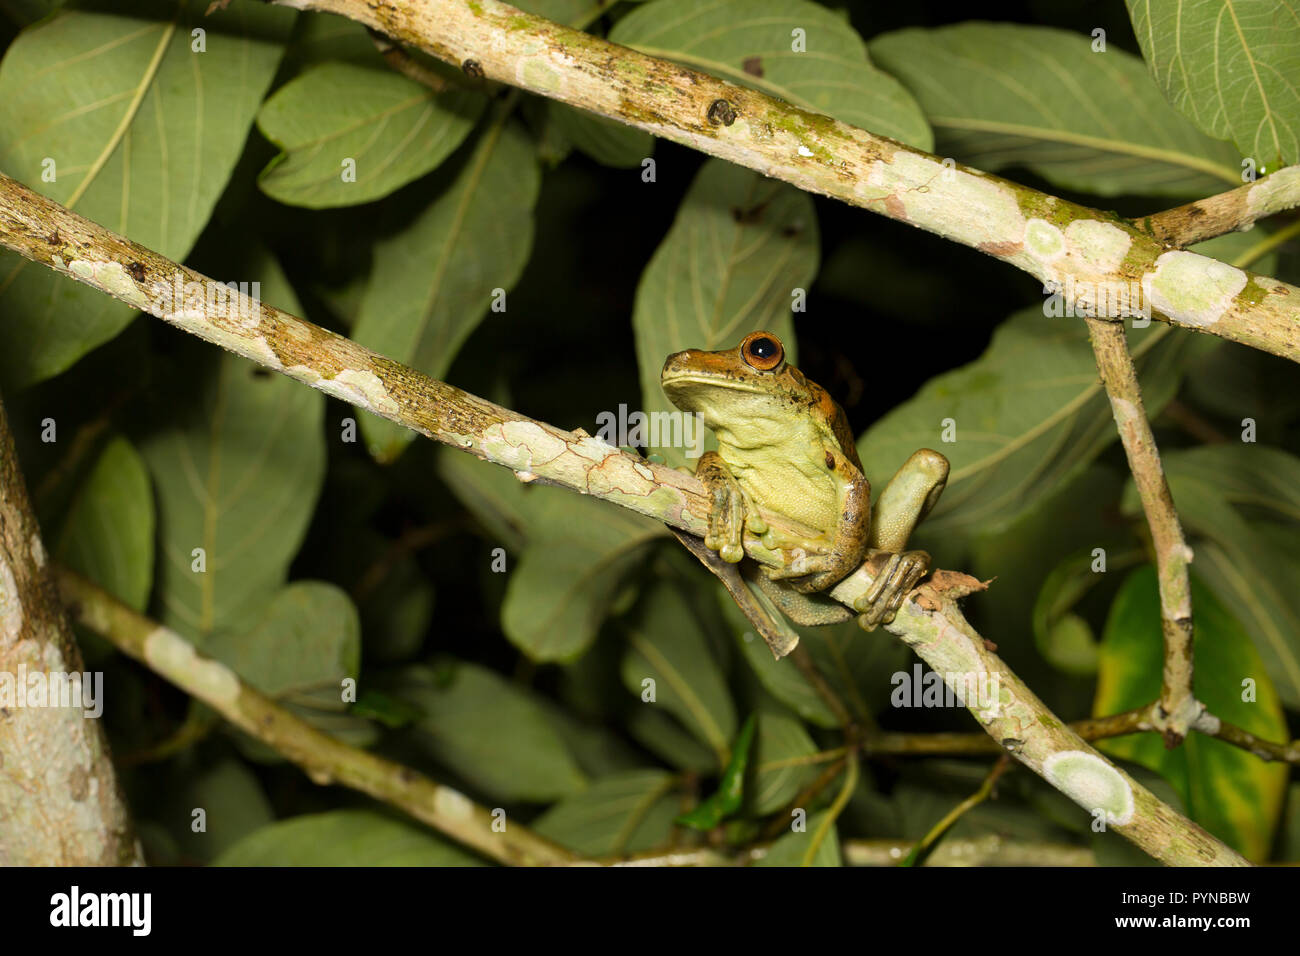 Ein laubfrosch im Dschungel von Suriname in der Nähe von Botapassie auf den Suriname Fluss fotografiert. Suriname ist für seine unberührte Regenwälder und biodive festgestellt Stockfoto